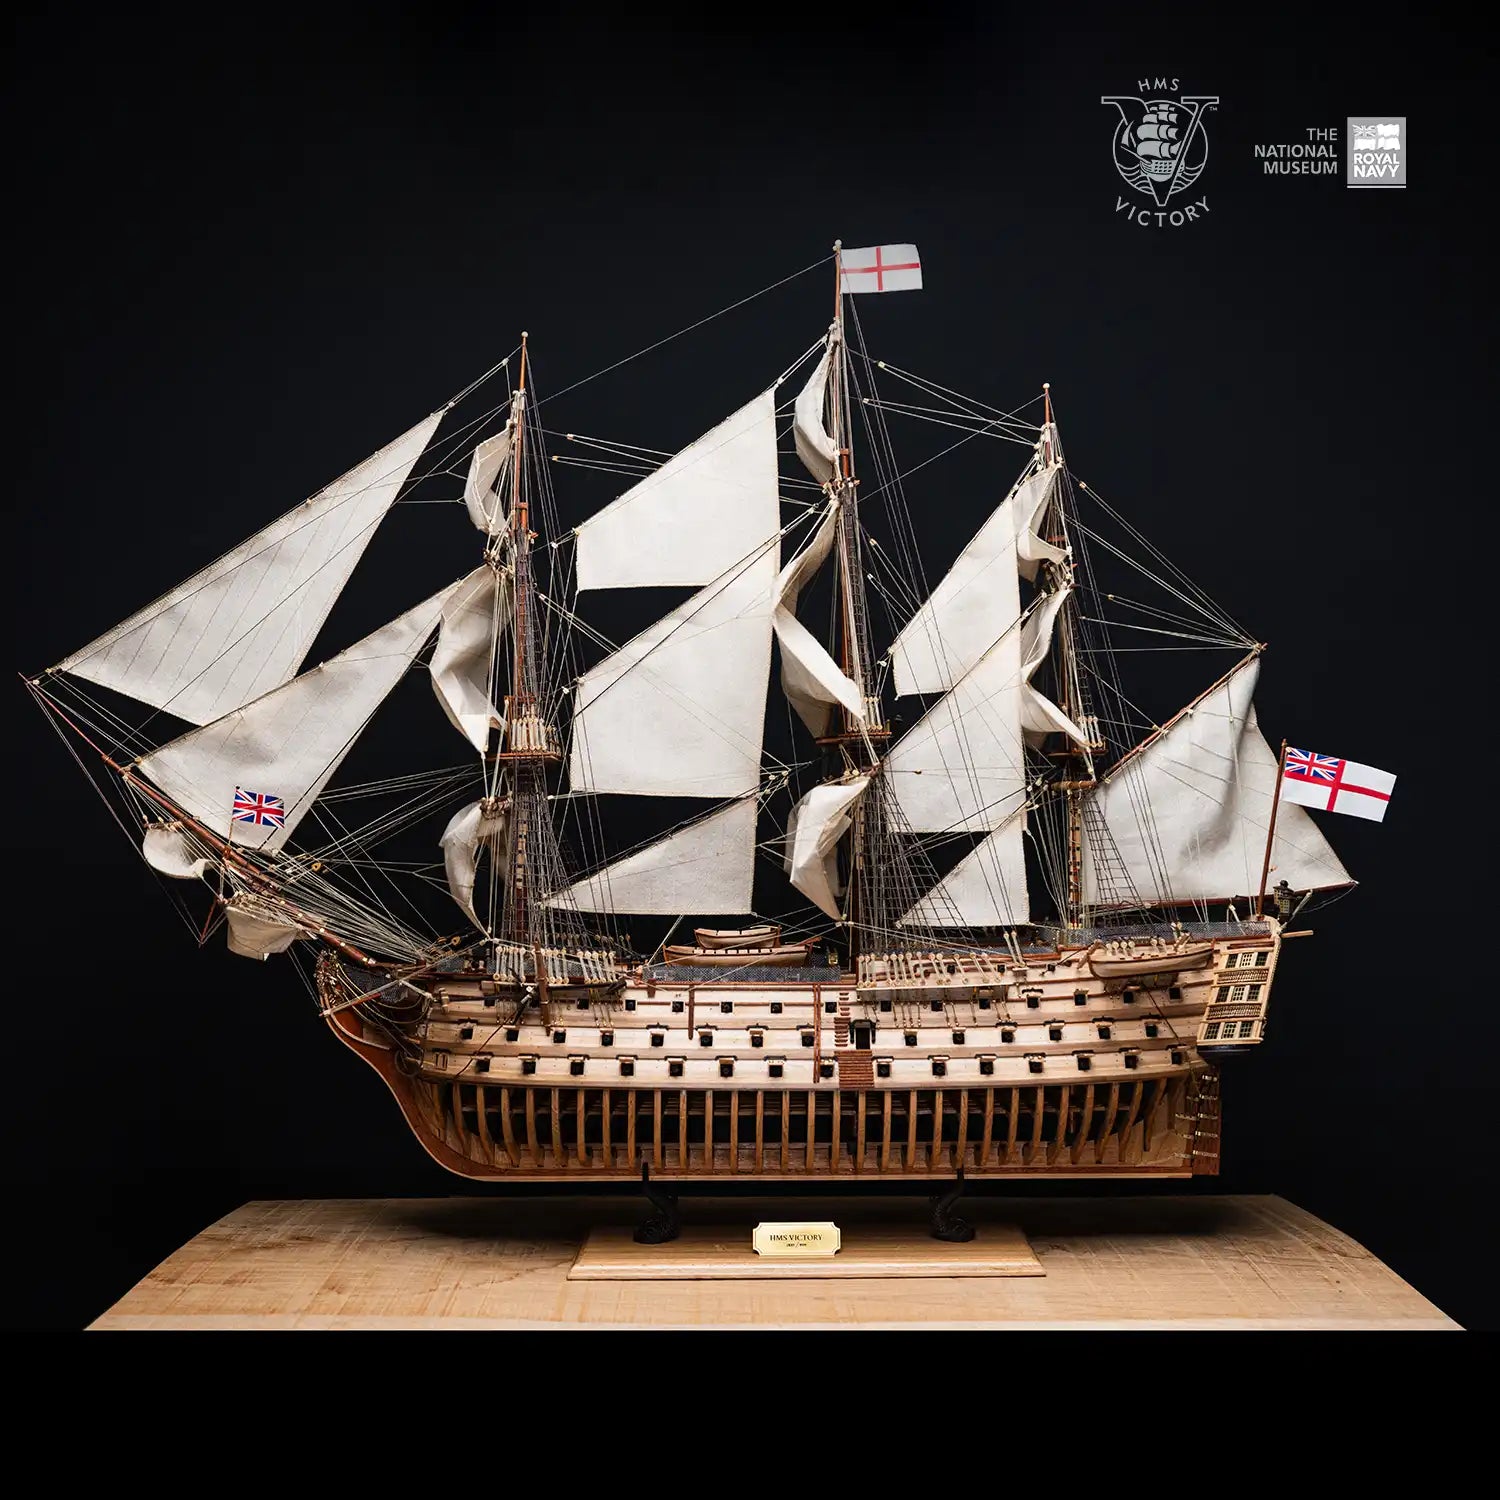 Barcos de madera nivel experto, tienda de modelismo naval online